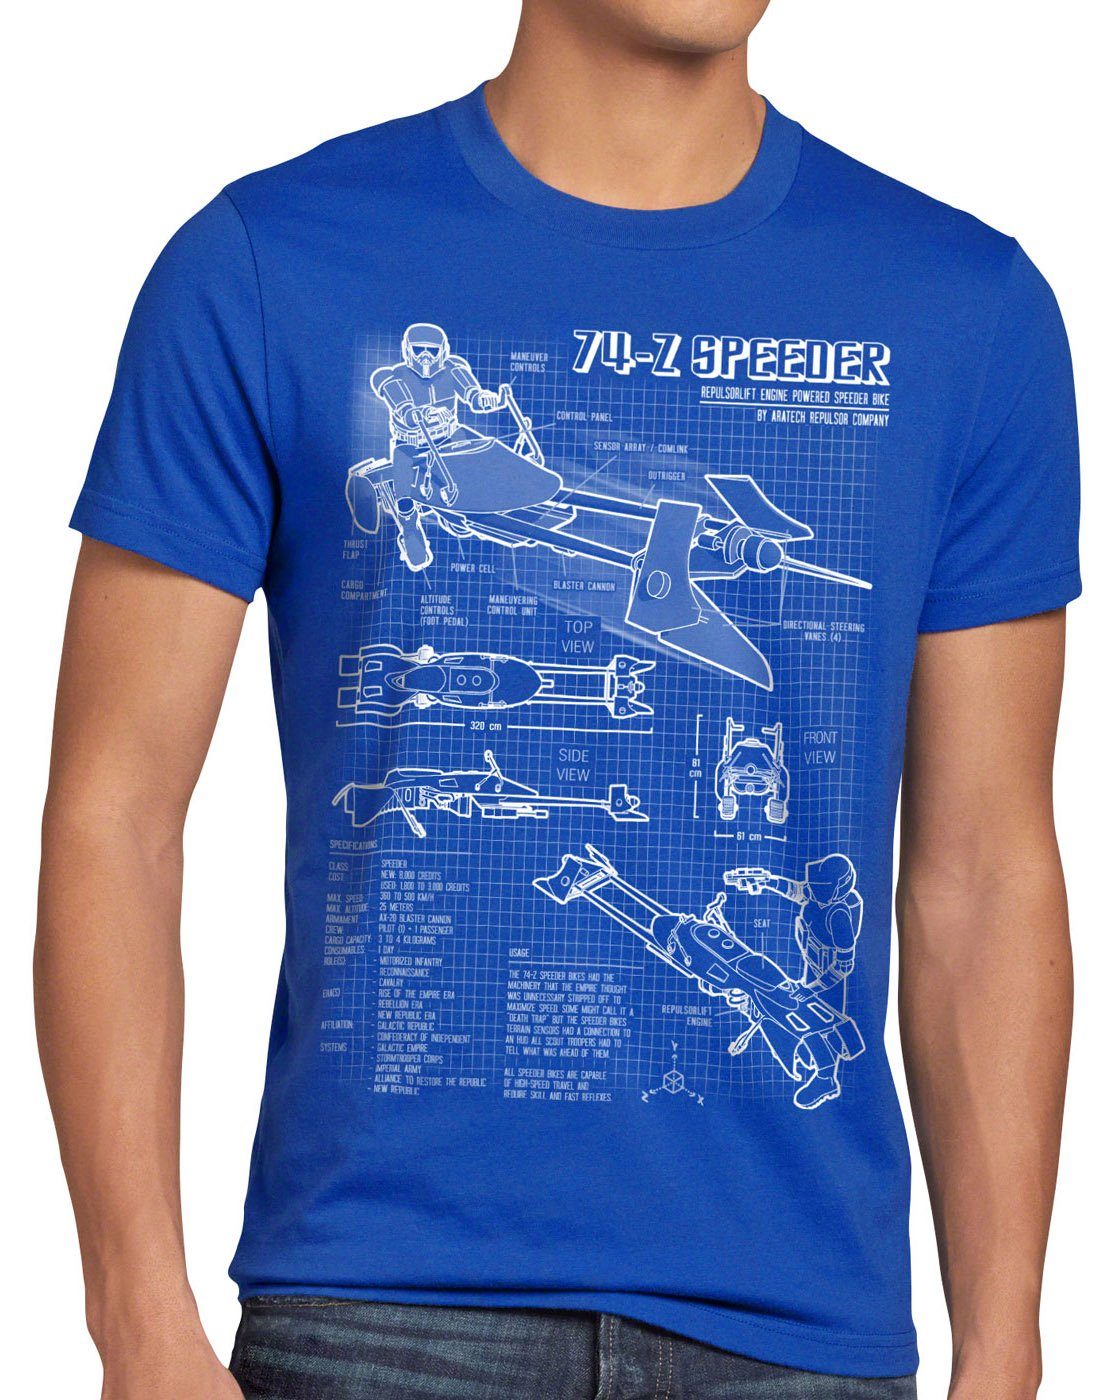 Print-Shirt wars ritter sterne der star T-Shirt jedi style3 Herren blau rückkehr krieg endor Bike 74-Z